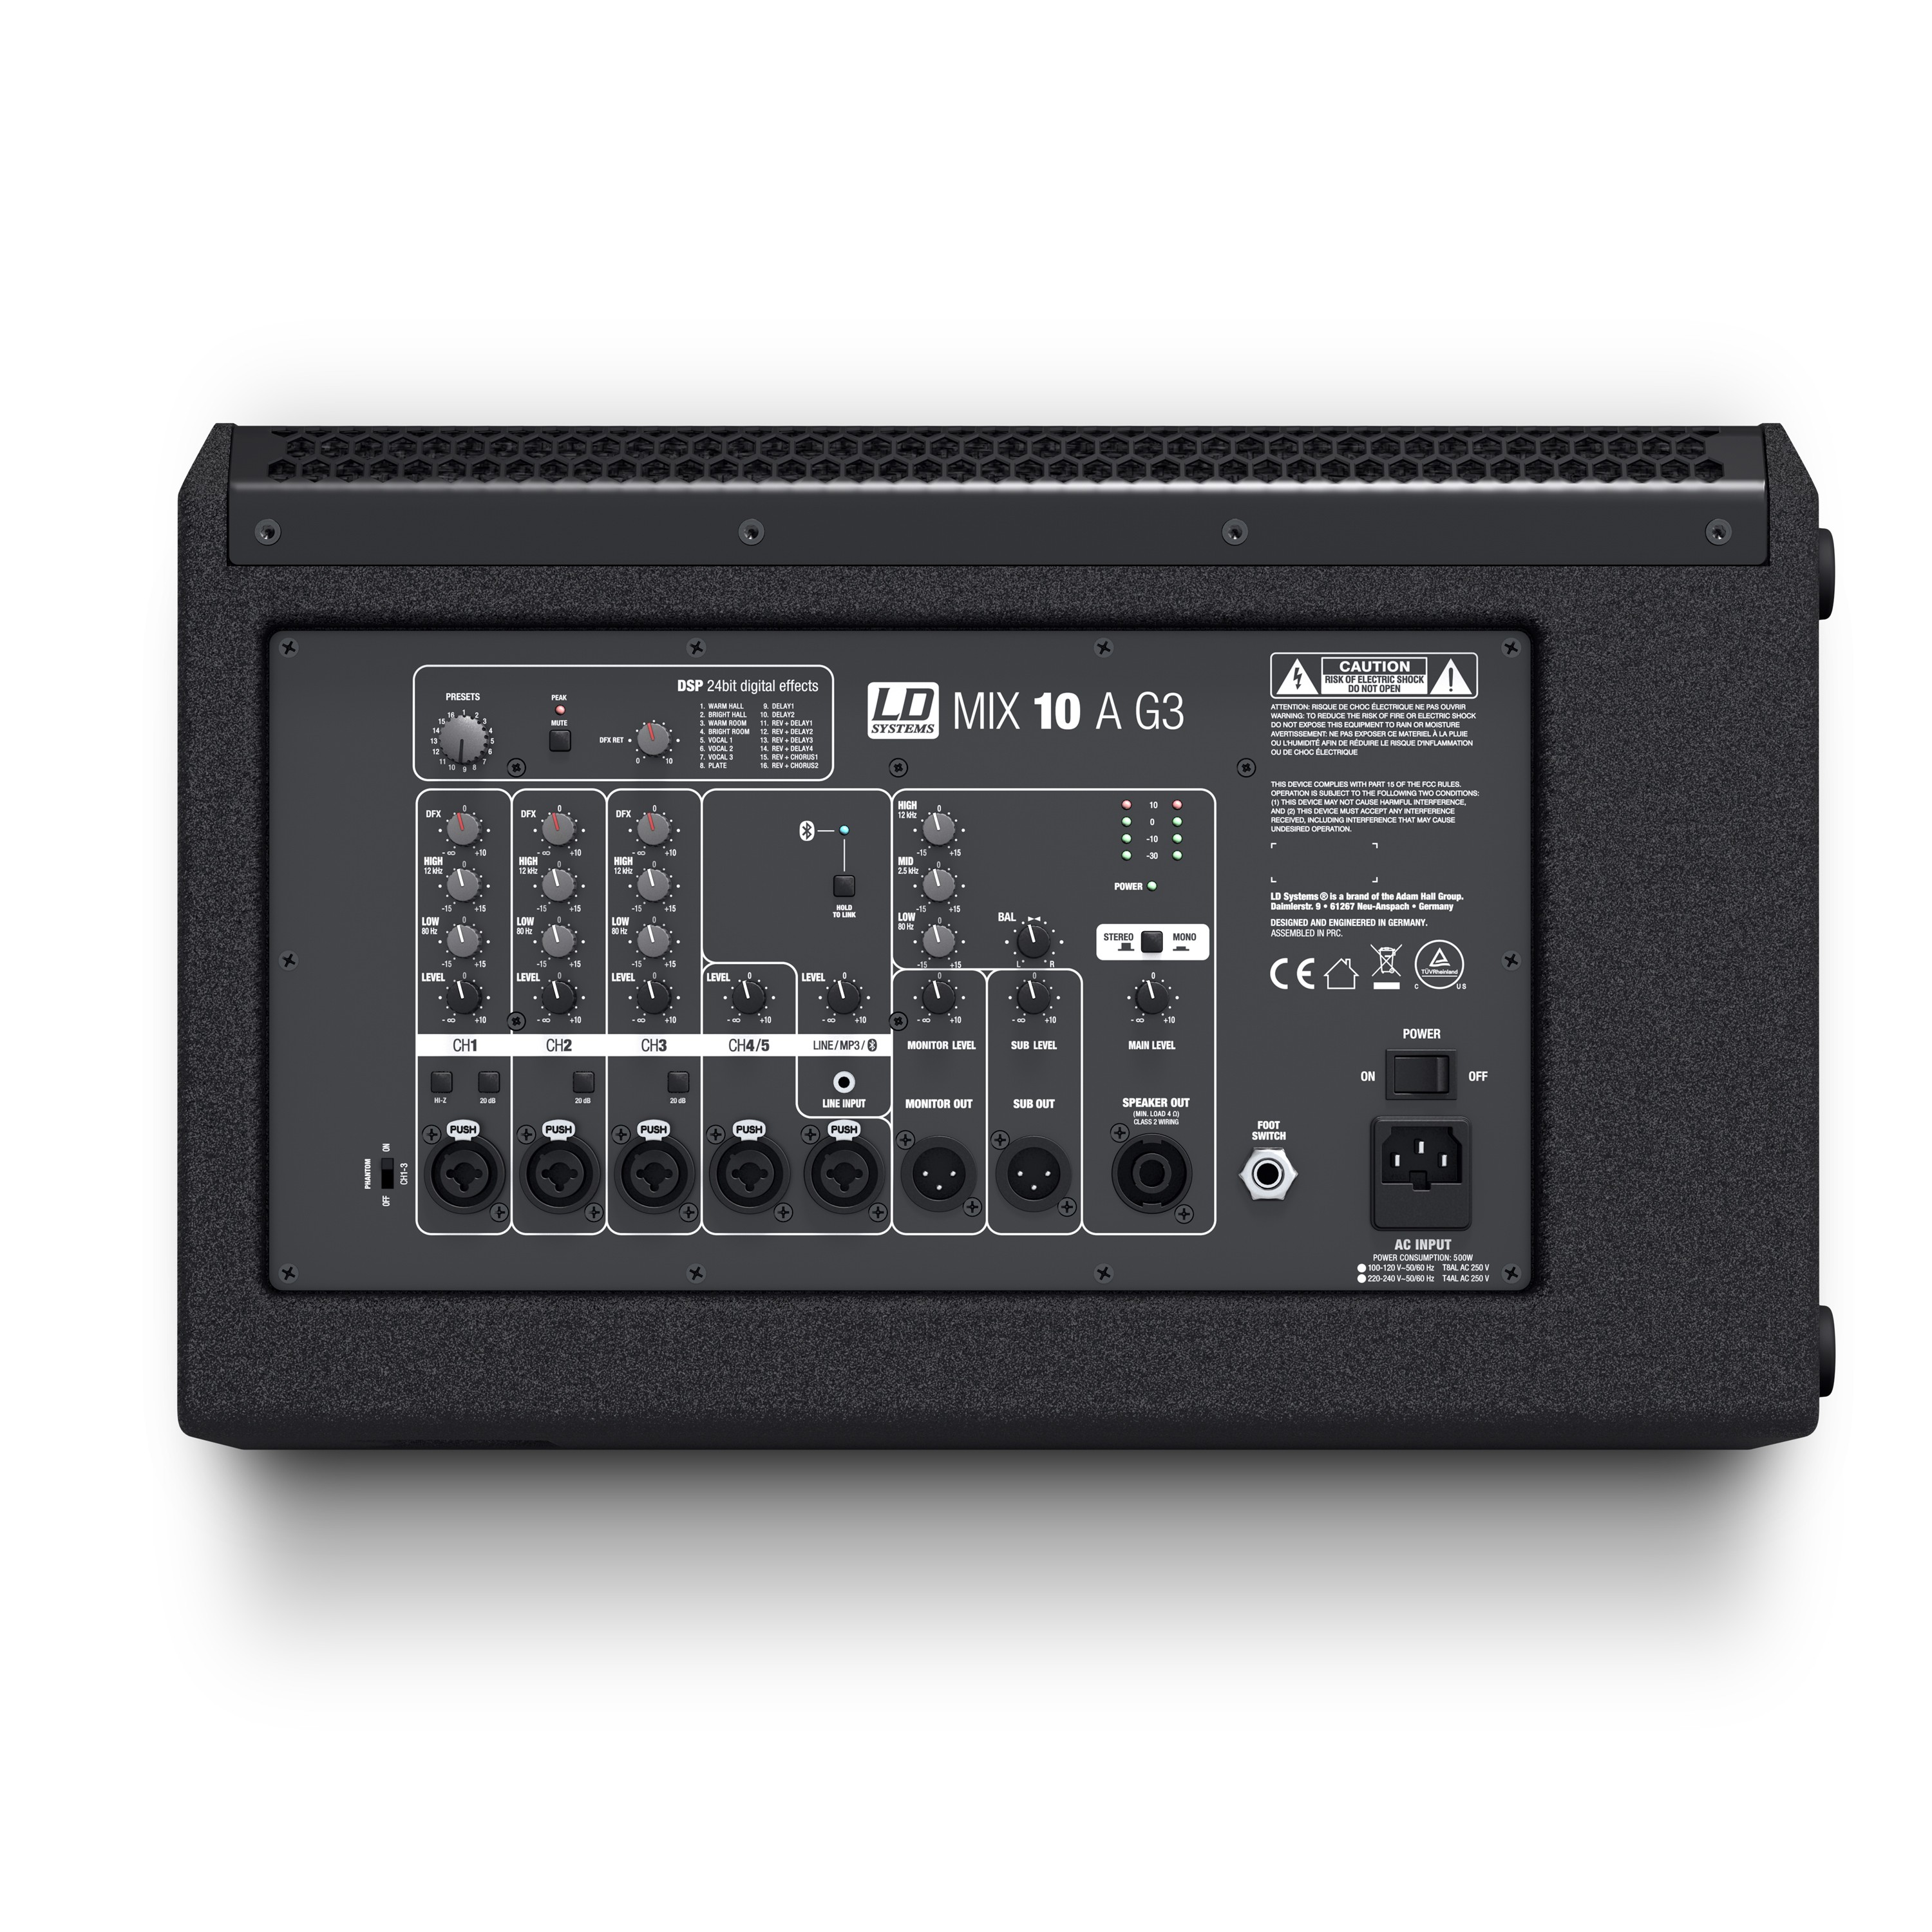 Ld Systems Mix 10 A G3 - Sistema de sonorización portátil - Variation 2